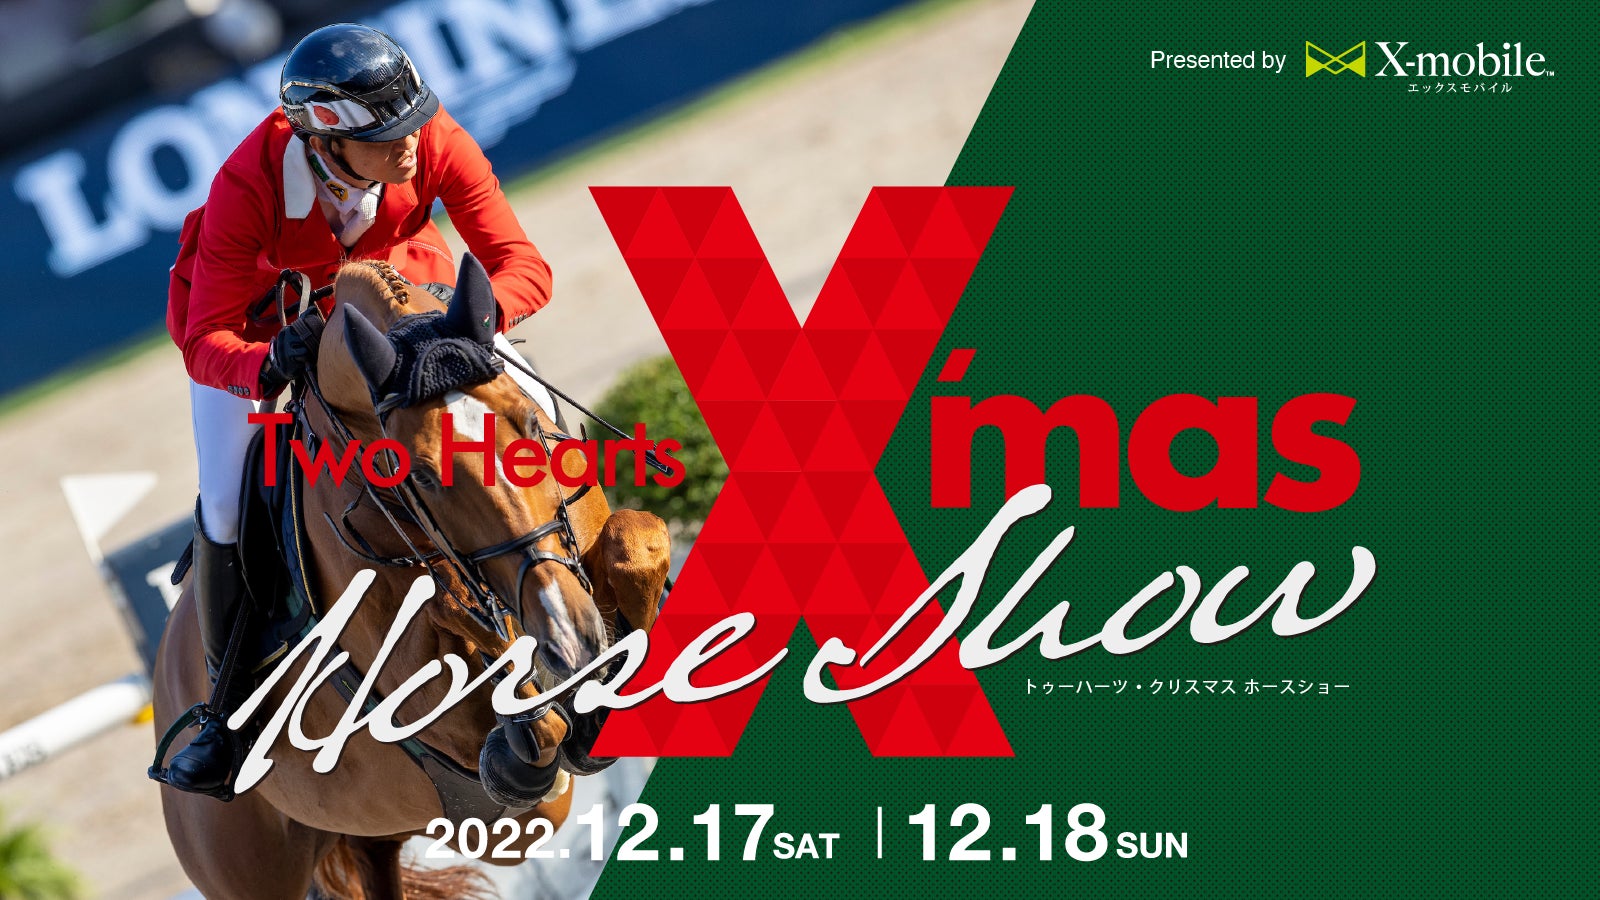 格安携帯キャリア『X-mobile』は12月17日、18日に開催のエンタメ型ホースショー「Two Hearts Christmas Horse Show 2022」とのスポンサー契約を締結いたしました